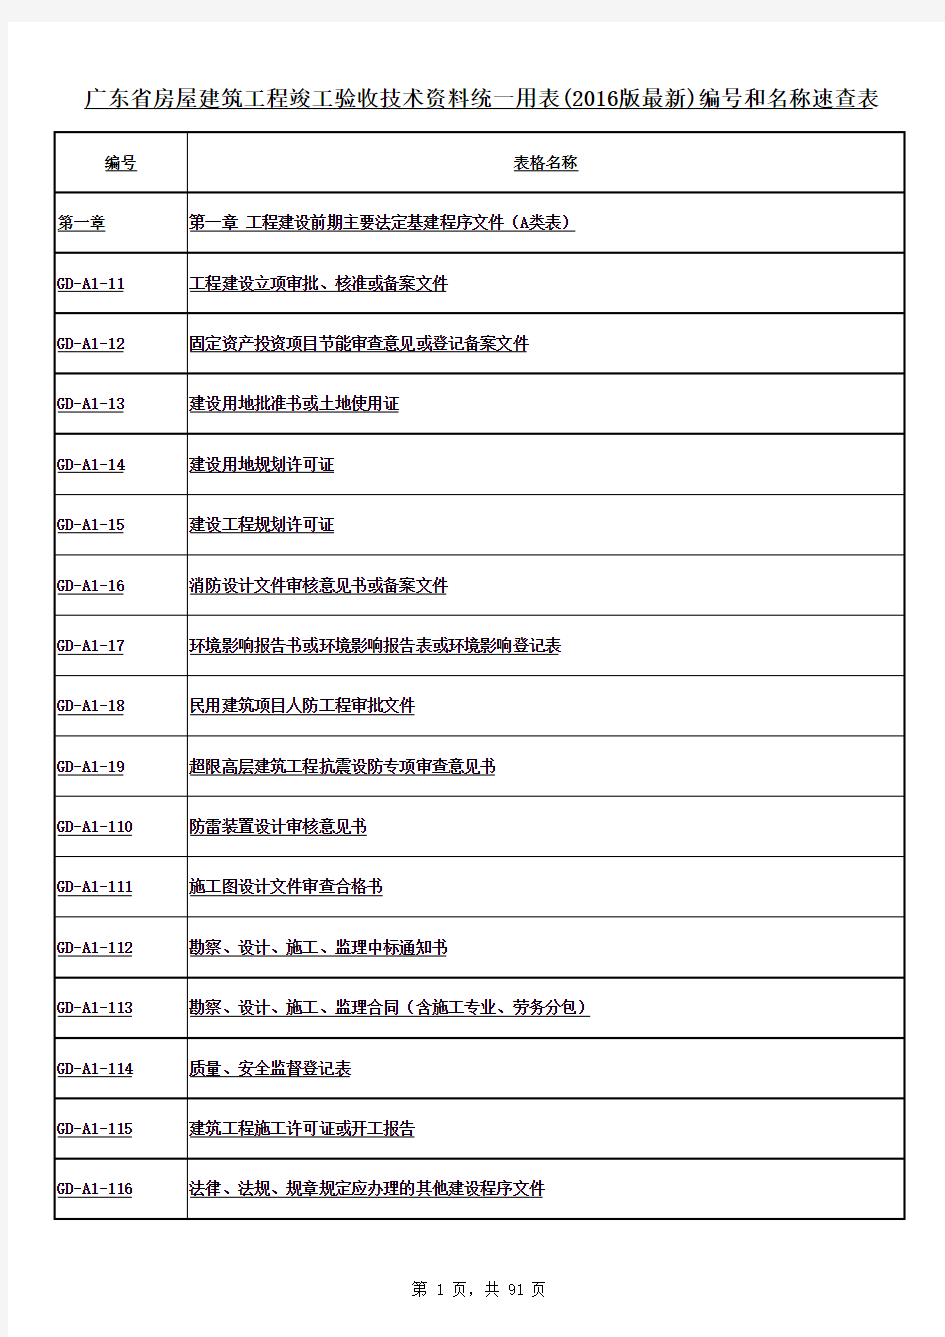 广东省房屋建筑工程竣工验收技术资料统一用表(2016版最新)编号和名称速查表